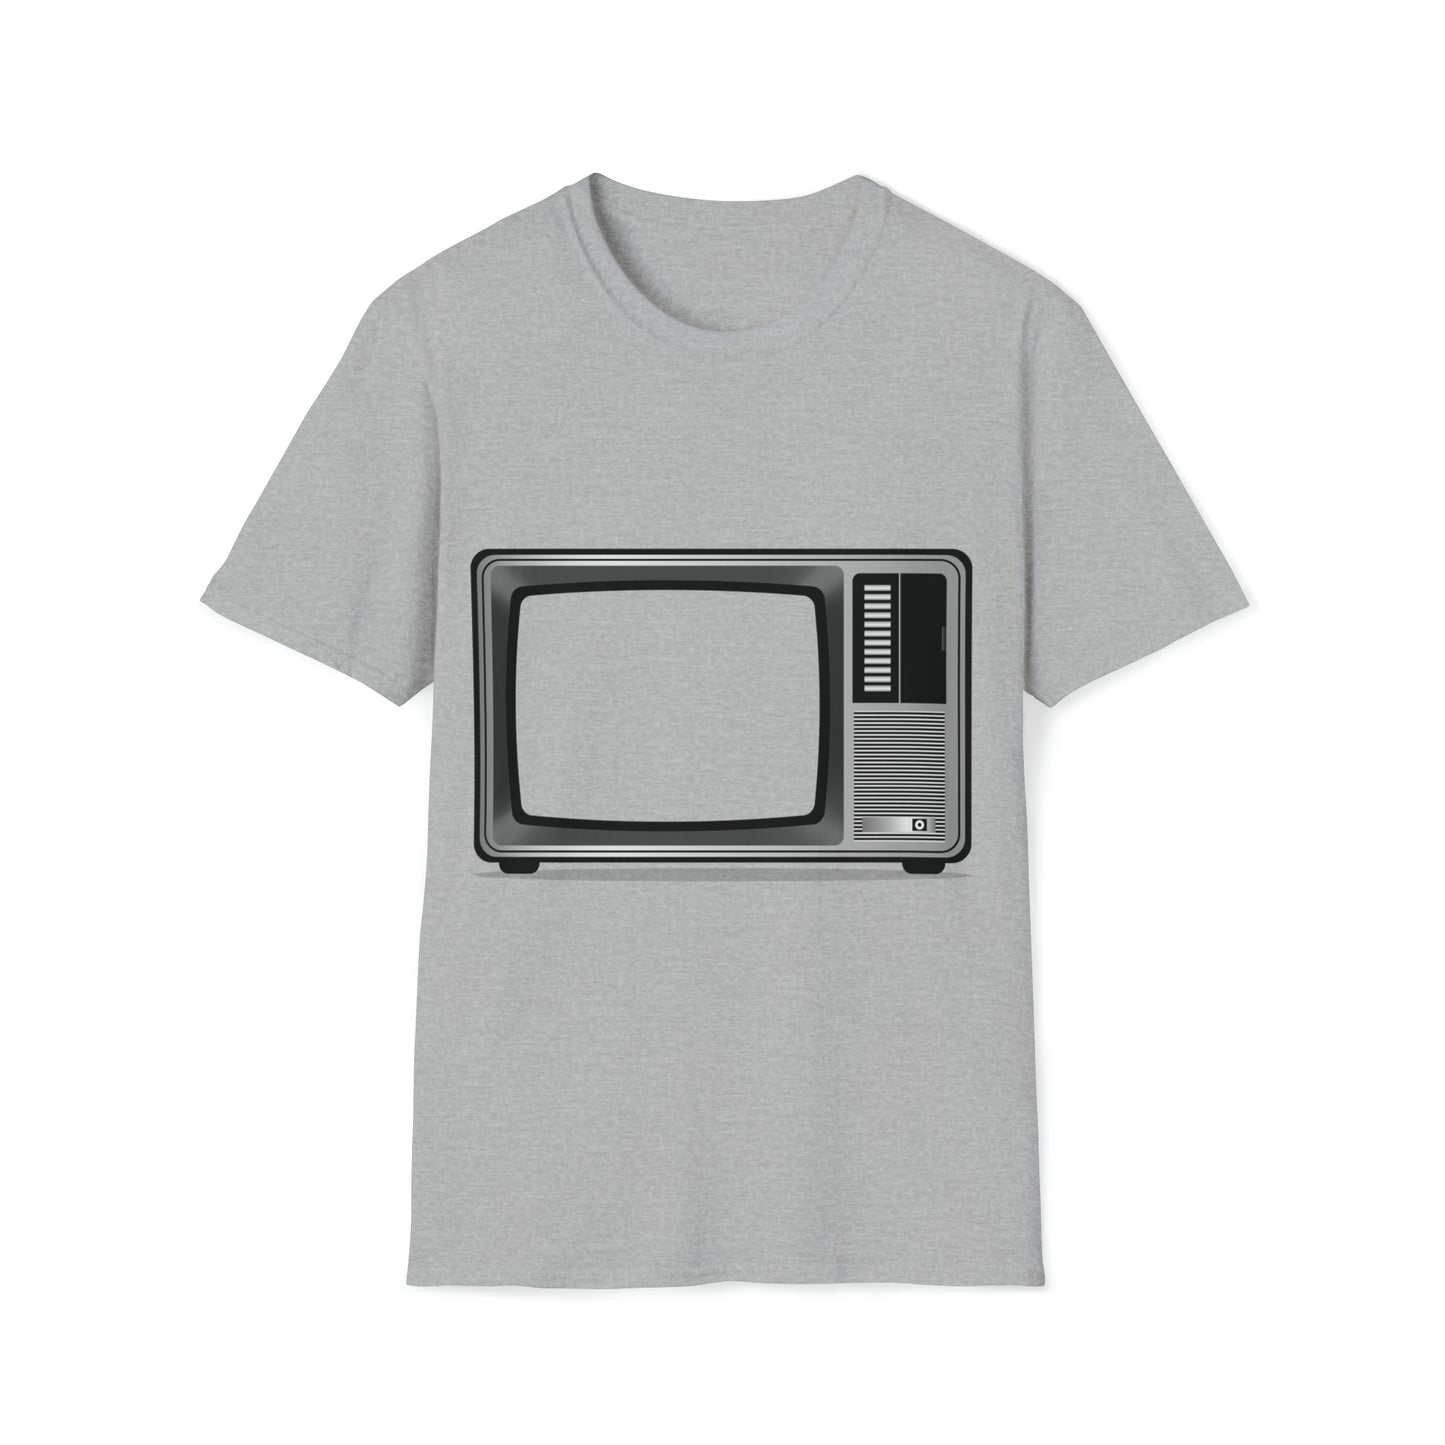 TV tshirt